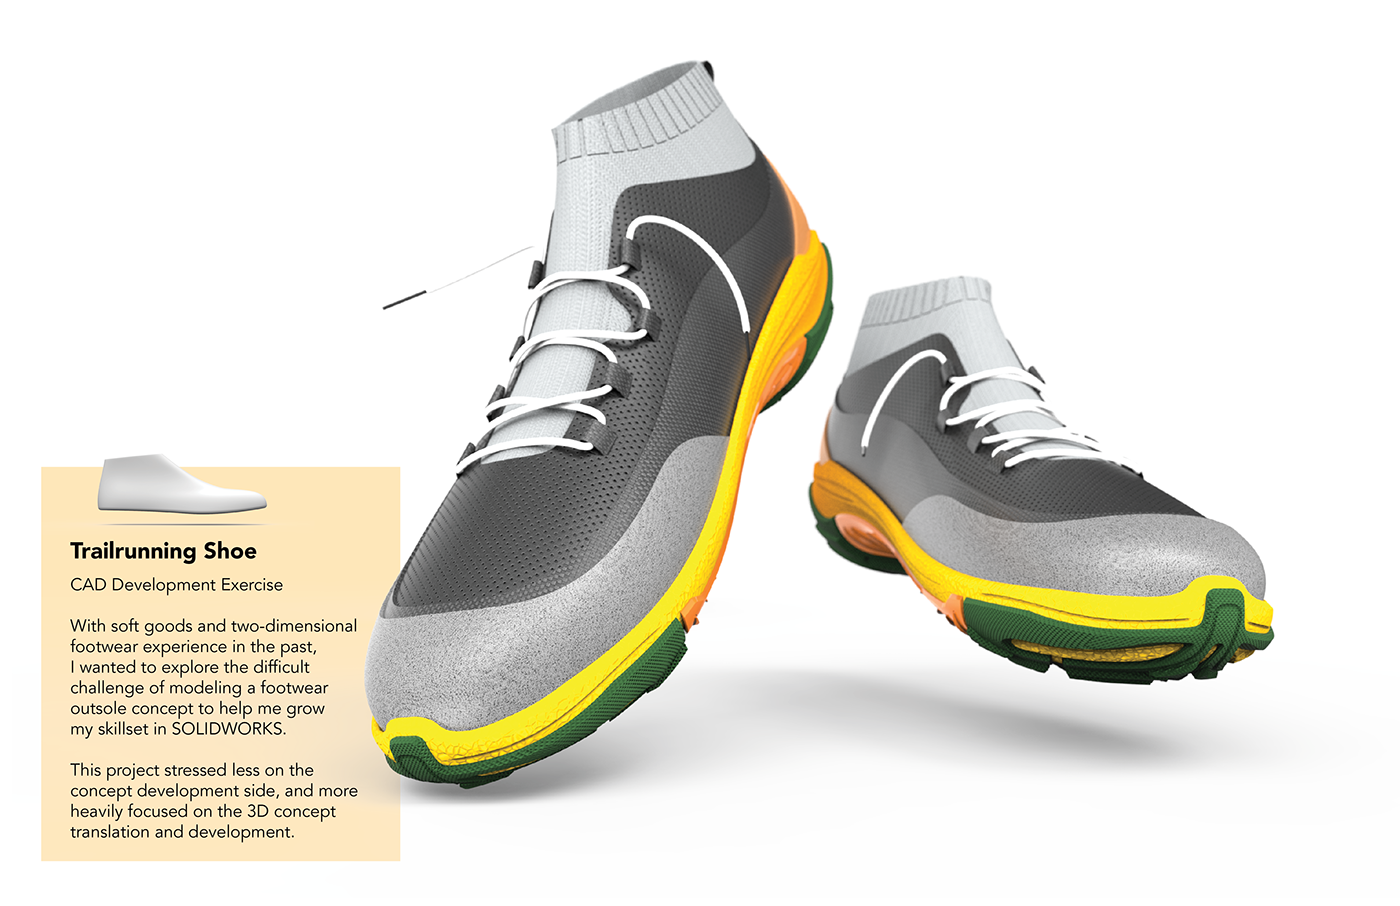 footwear trailrunning cad Solidworks keyshot concept